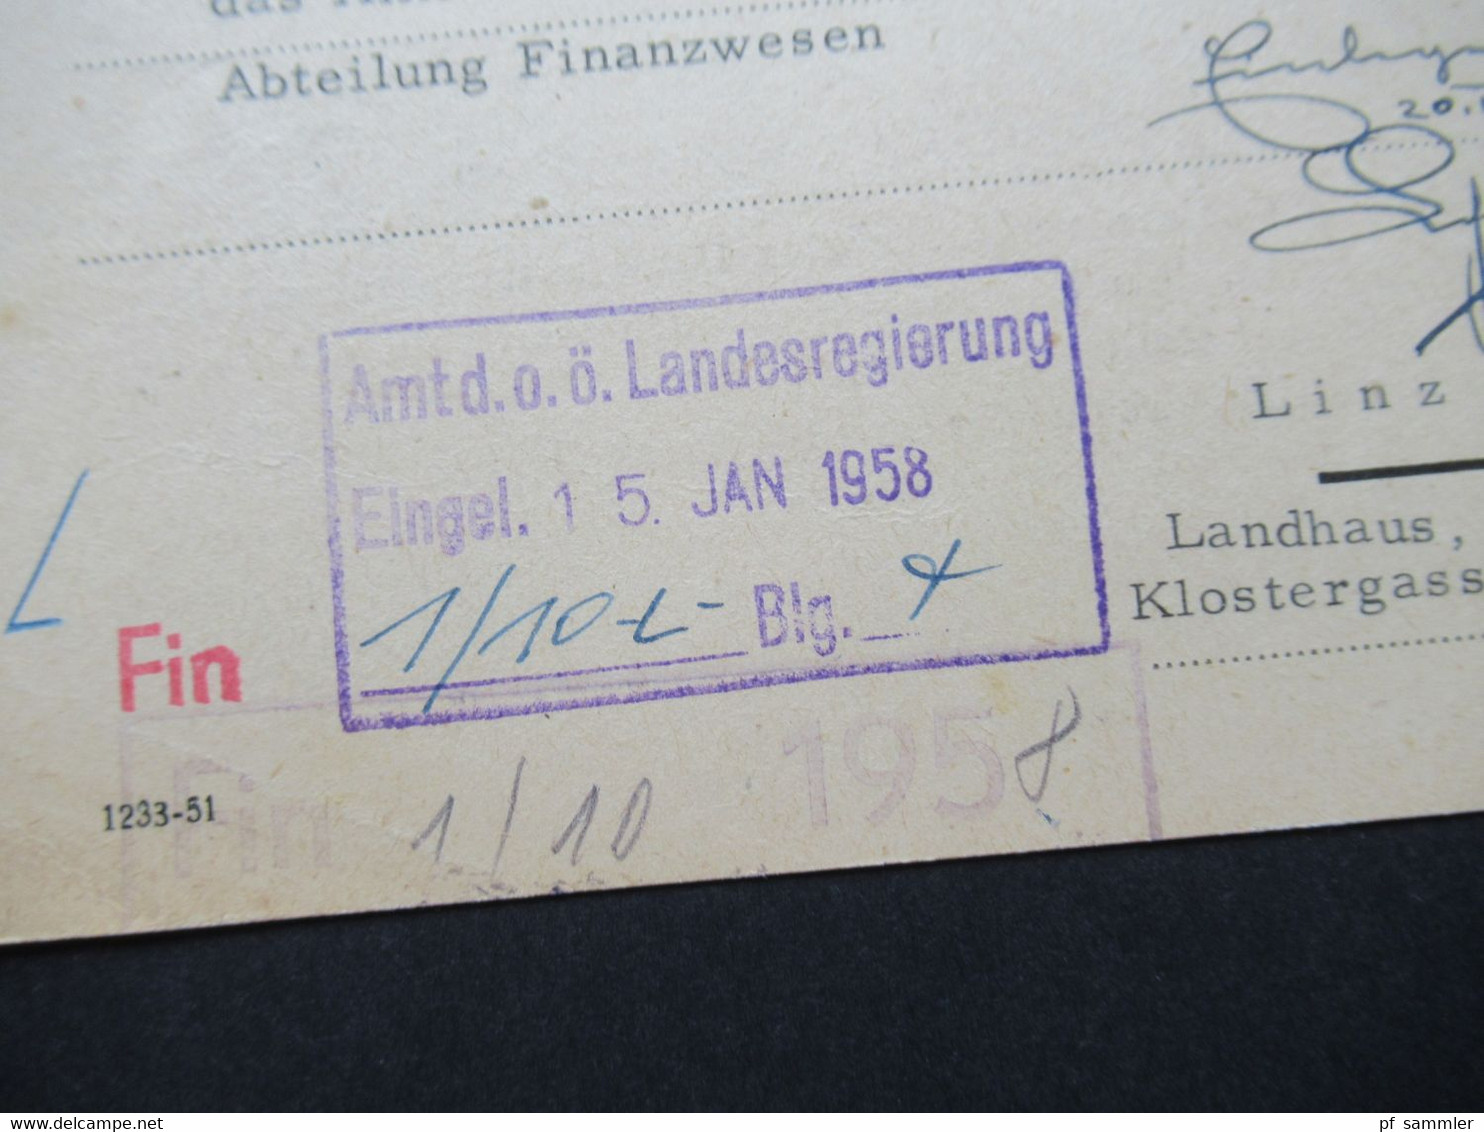 Österreich 1958 PK Mit Freistempel 100 Groschen Magistrat Graz An Das Amt Der O.Ö. Landesregierung In Linz Stempel Fin - Covers & Documents